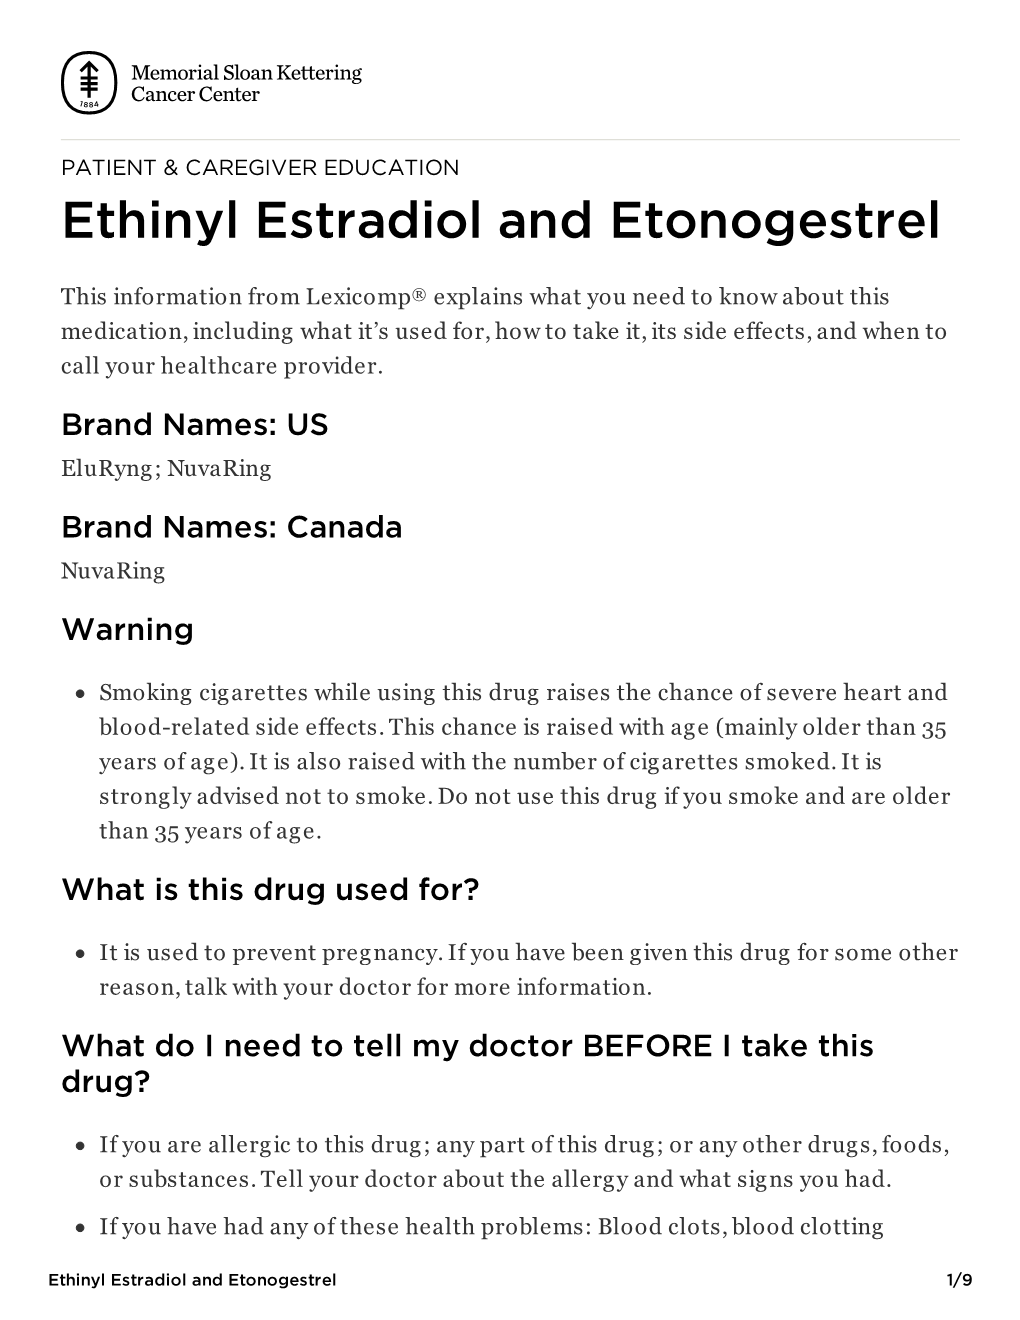 Ethinyl Estradiol and Etonogestrel